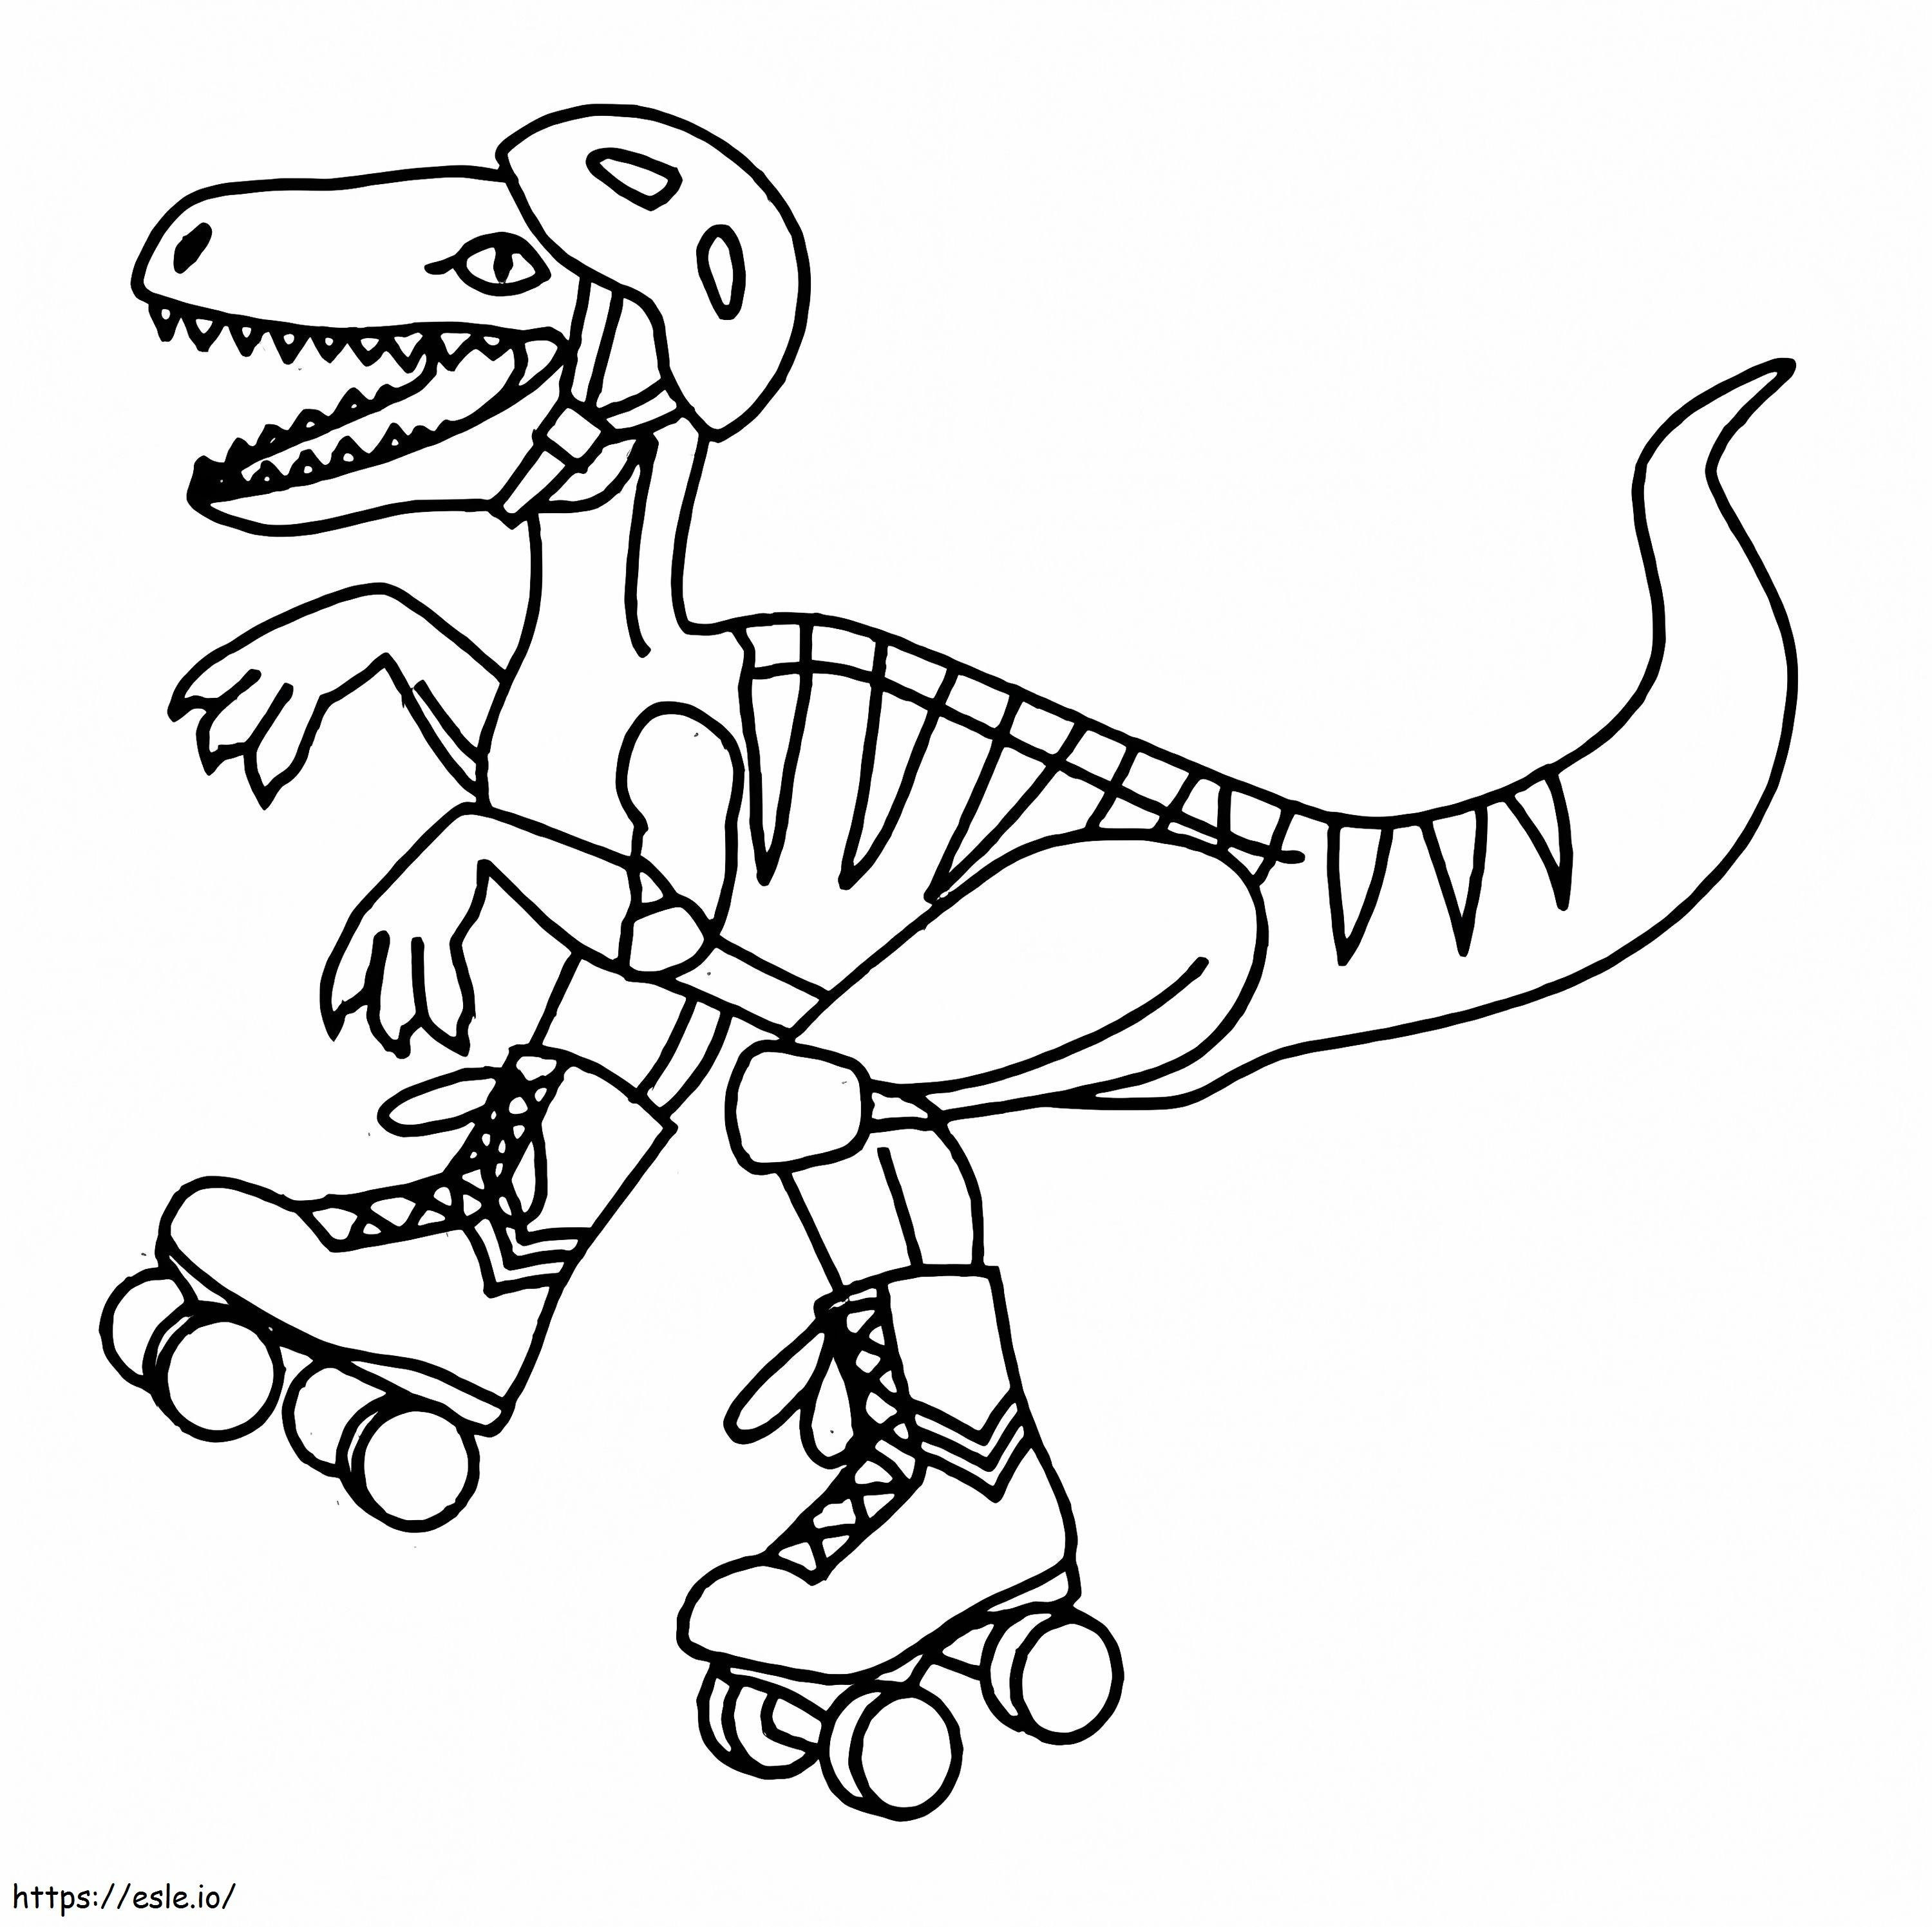 Dinossauro em patins para colorir